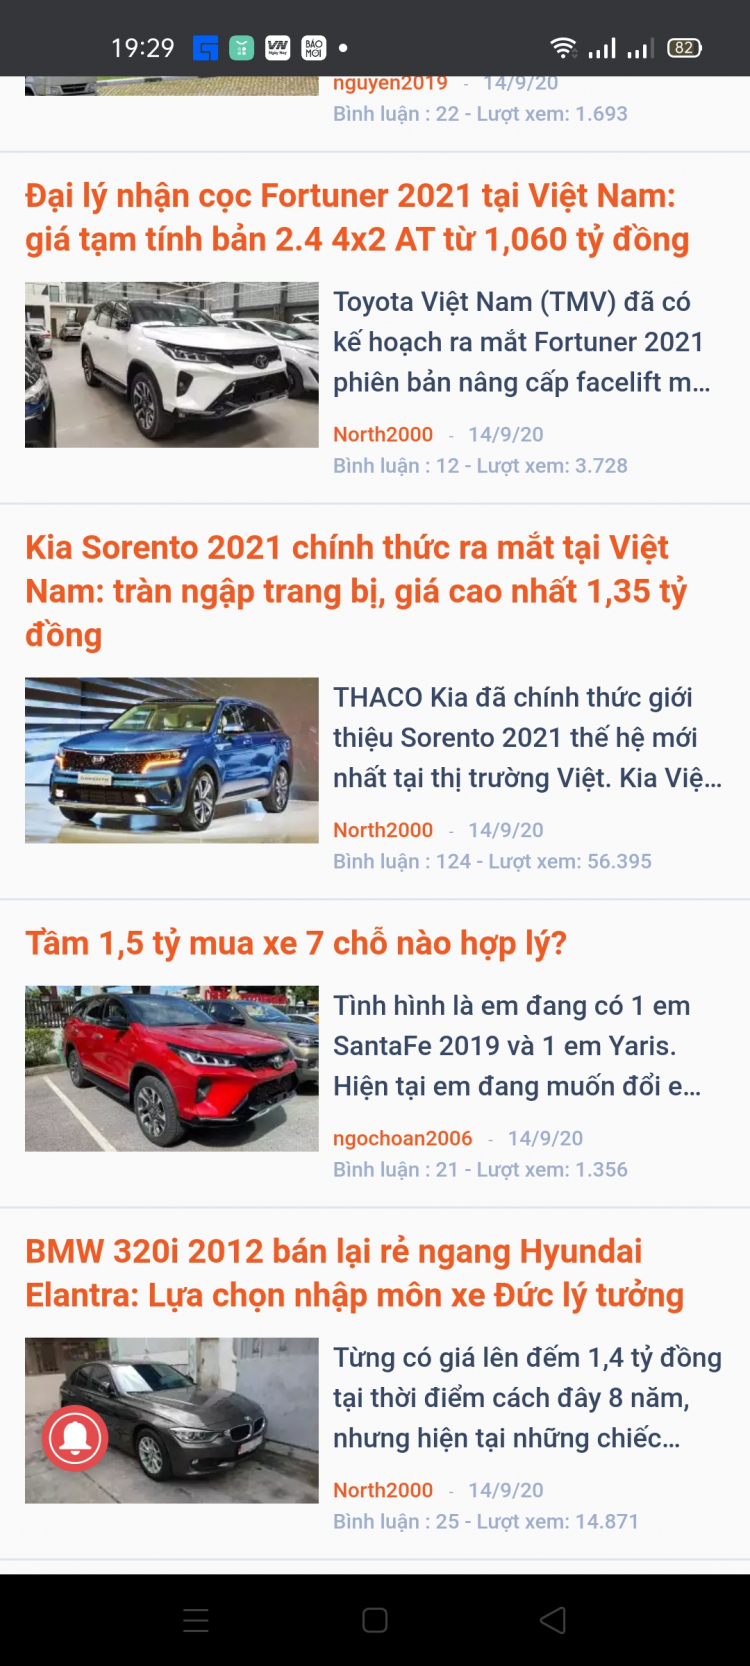 Toyota Việt Nam công bố doanh số tháng 8/2020: Vios vẫn là đầu tàu